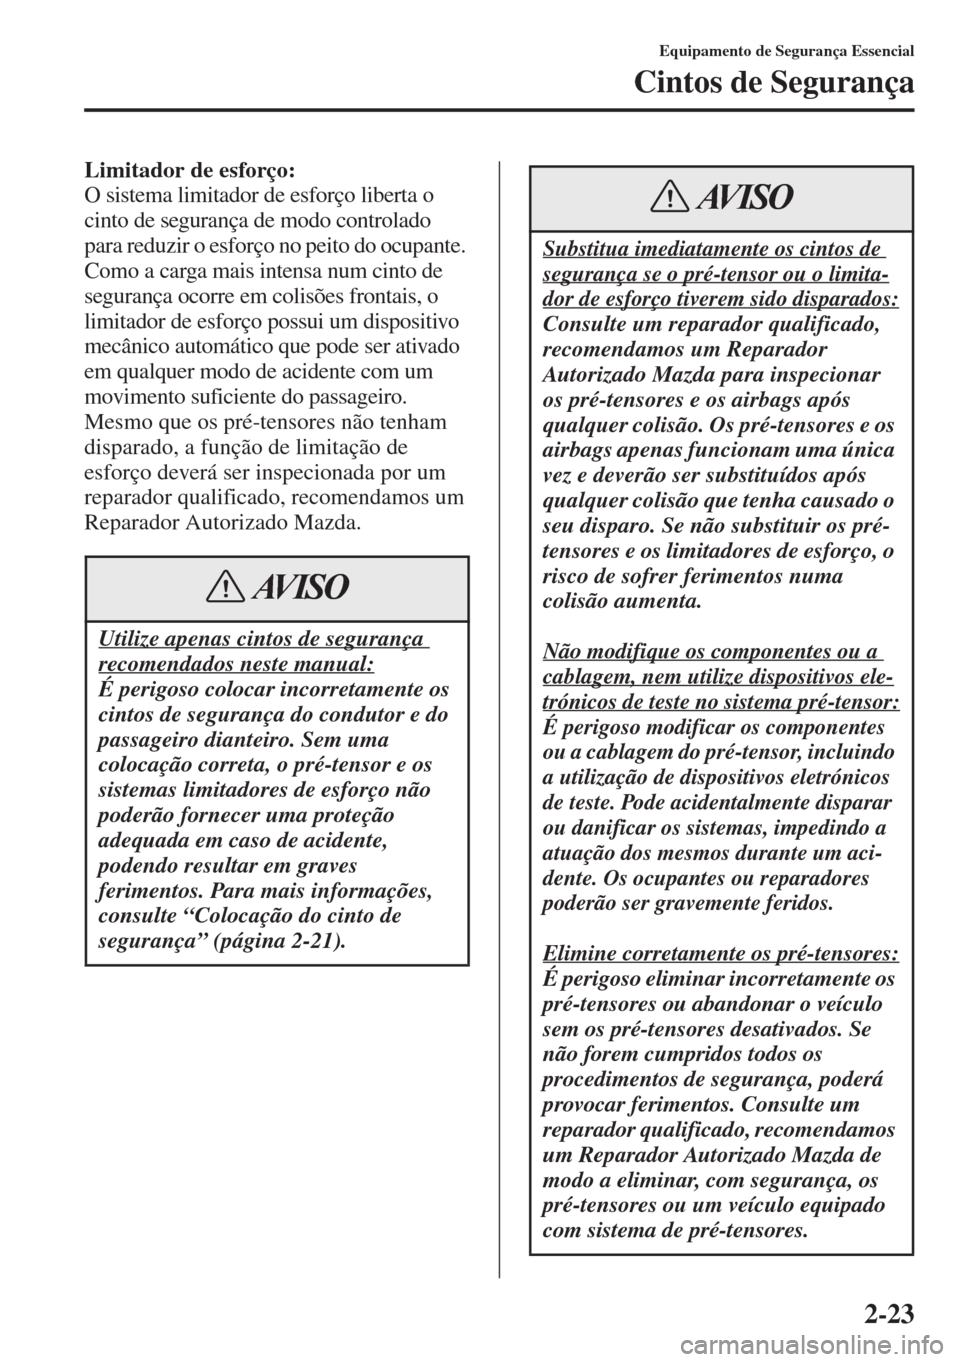 MAZDA MODEL CX-5 2015  Manual do proprietário (in Portuguese) 2-23
Equipamento de Segurança Essencial
Cintos de Segurança
Limitador de esforço:
O sistema limitador de esforço liberta o 
cinto de segurança de modo controlado 
para reduzir o esforço no peito